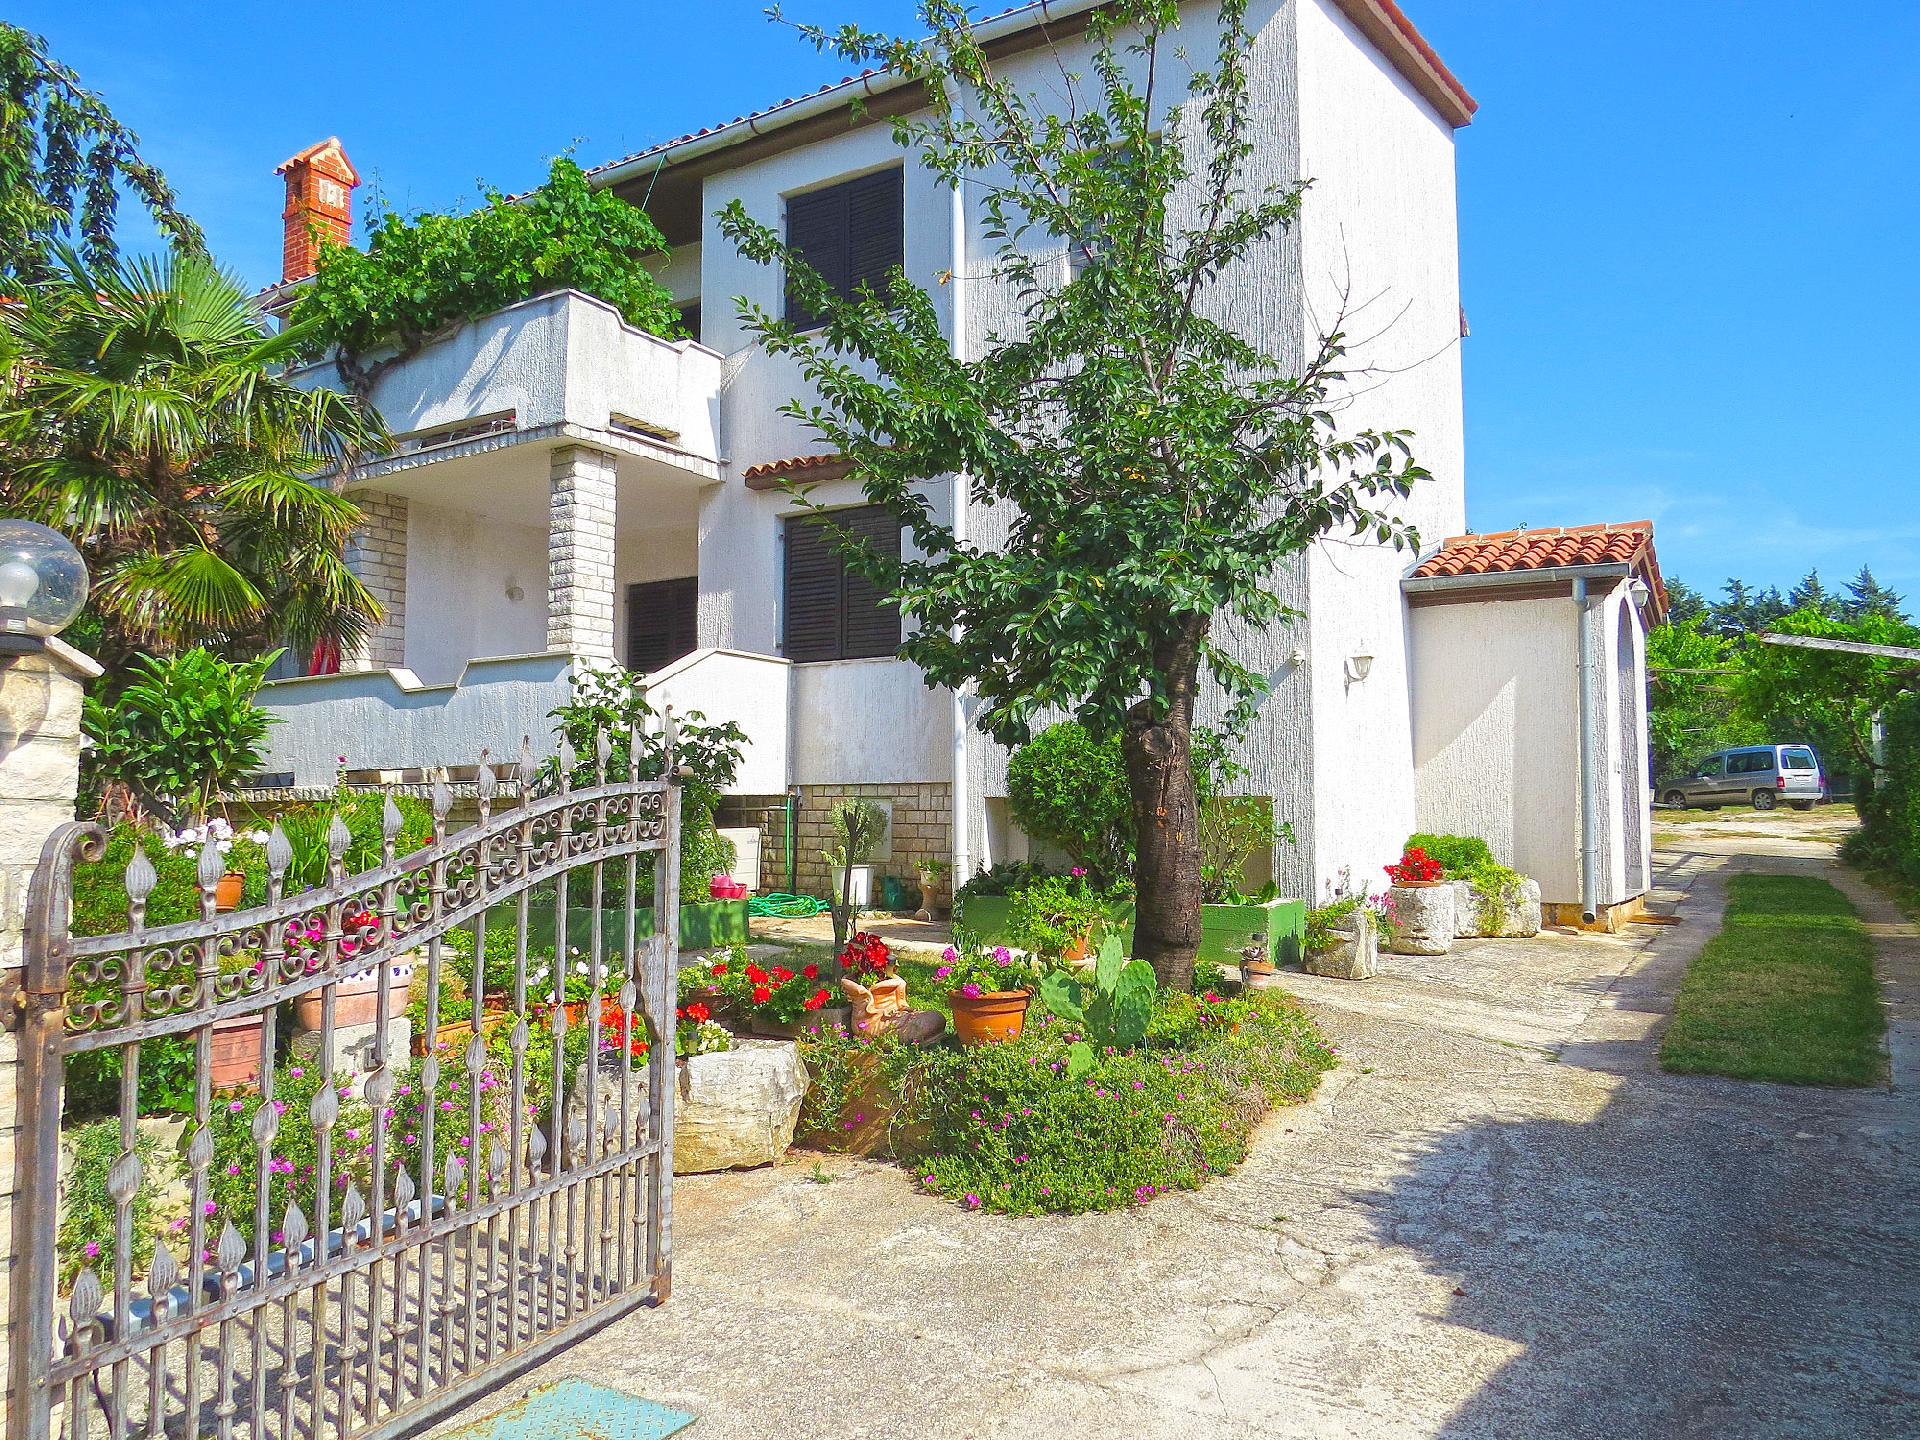 Ferienwohnung für 4 Personen ca. 65 m² i  in Istrien